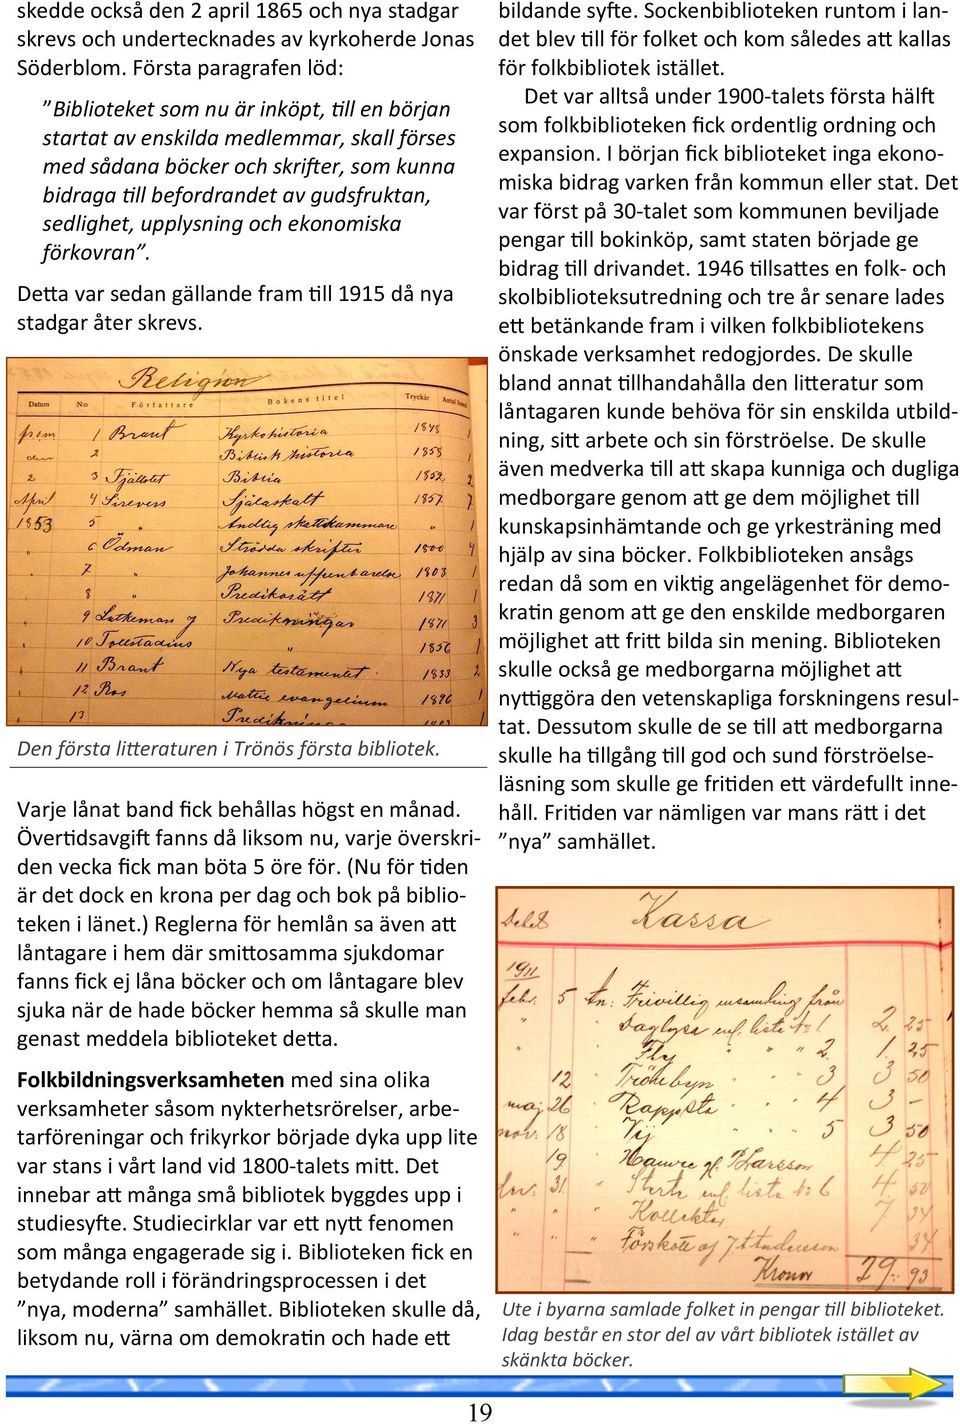 sedlighet, upplysning och ekonomiska förkovran. DeBa var sedan gällande fram!ll 1915 då nya stadgar åter skrevs. Den första lieraturen i Trönös första bibliotek.